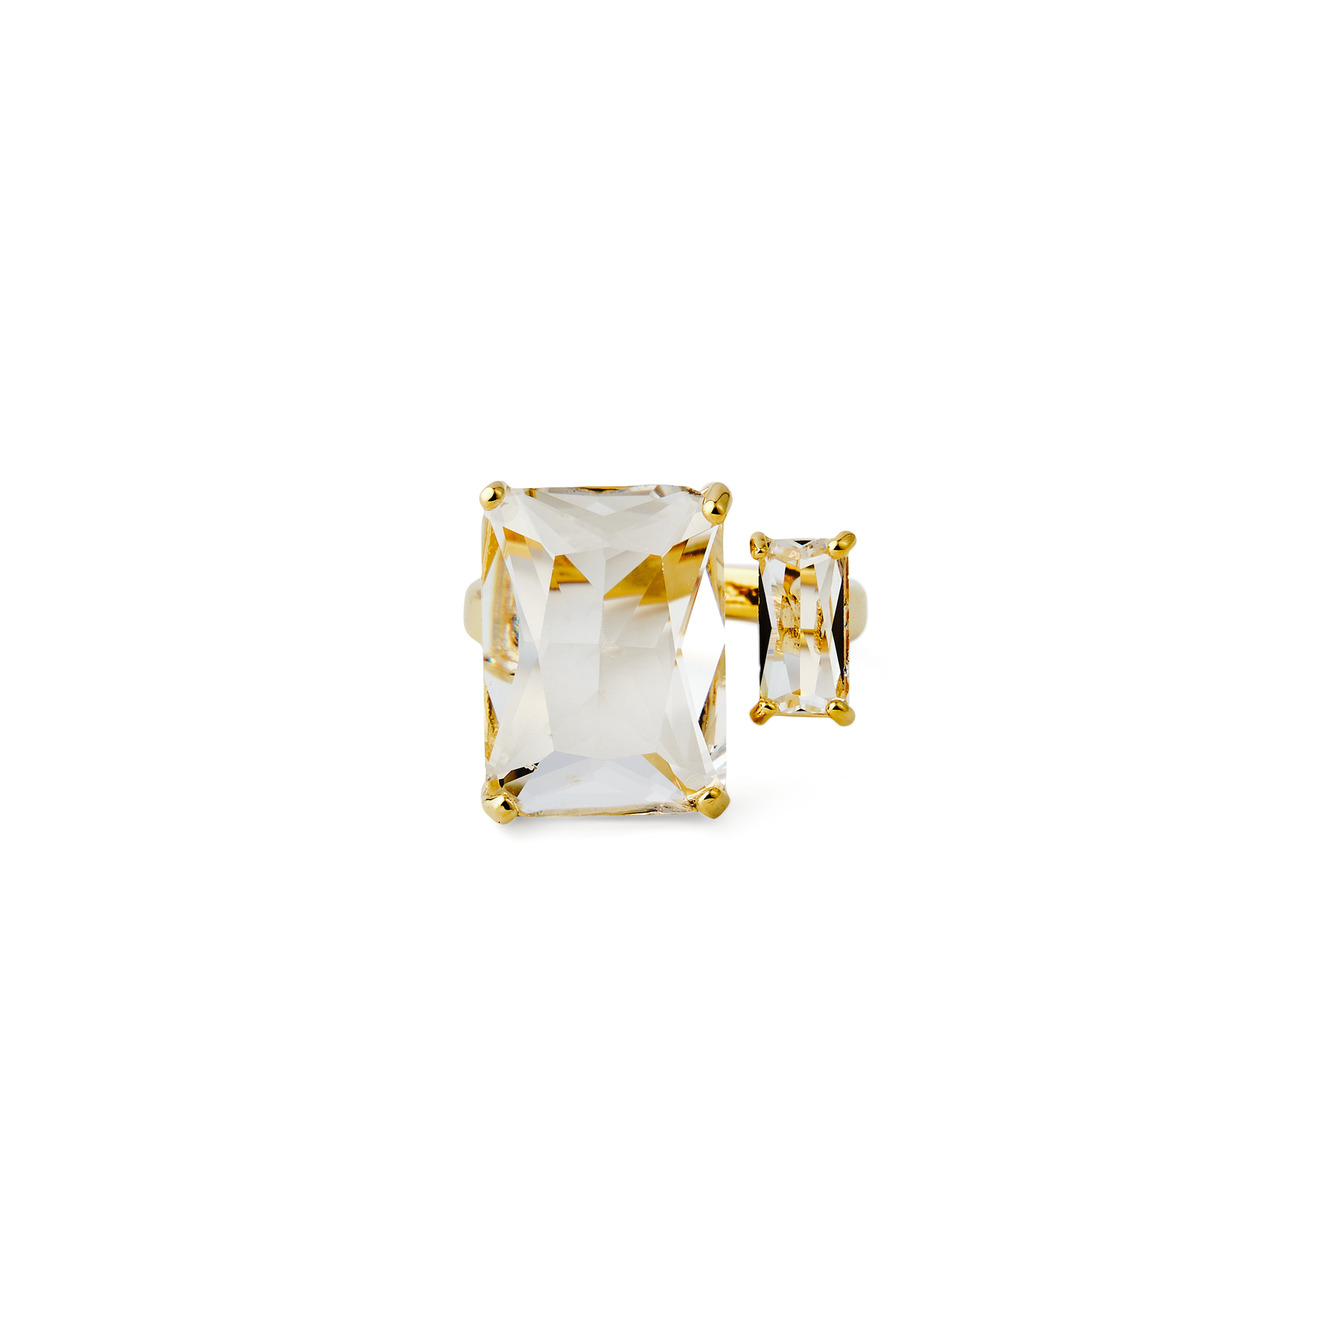 Herald Percy Золотистое кольцо с двумя разными кристаллами